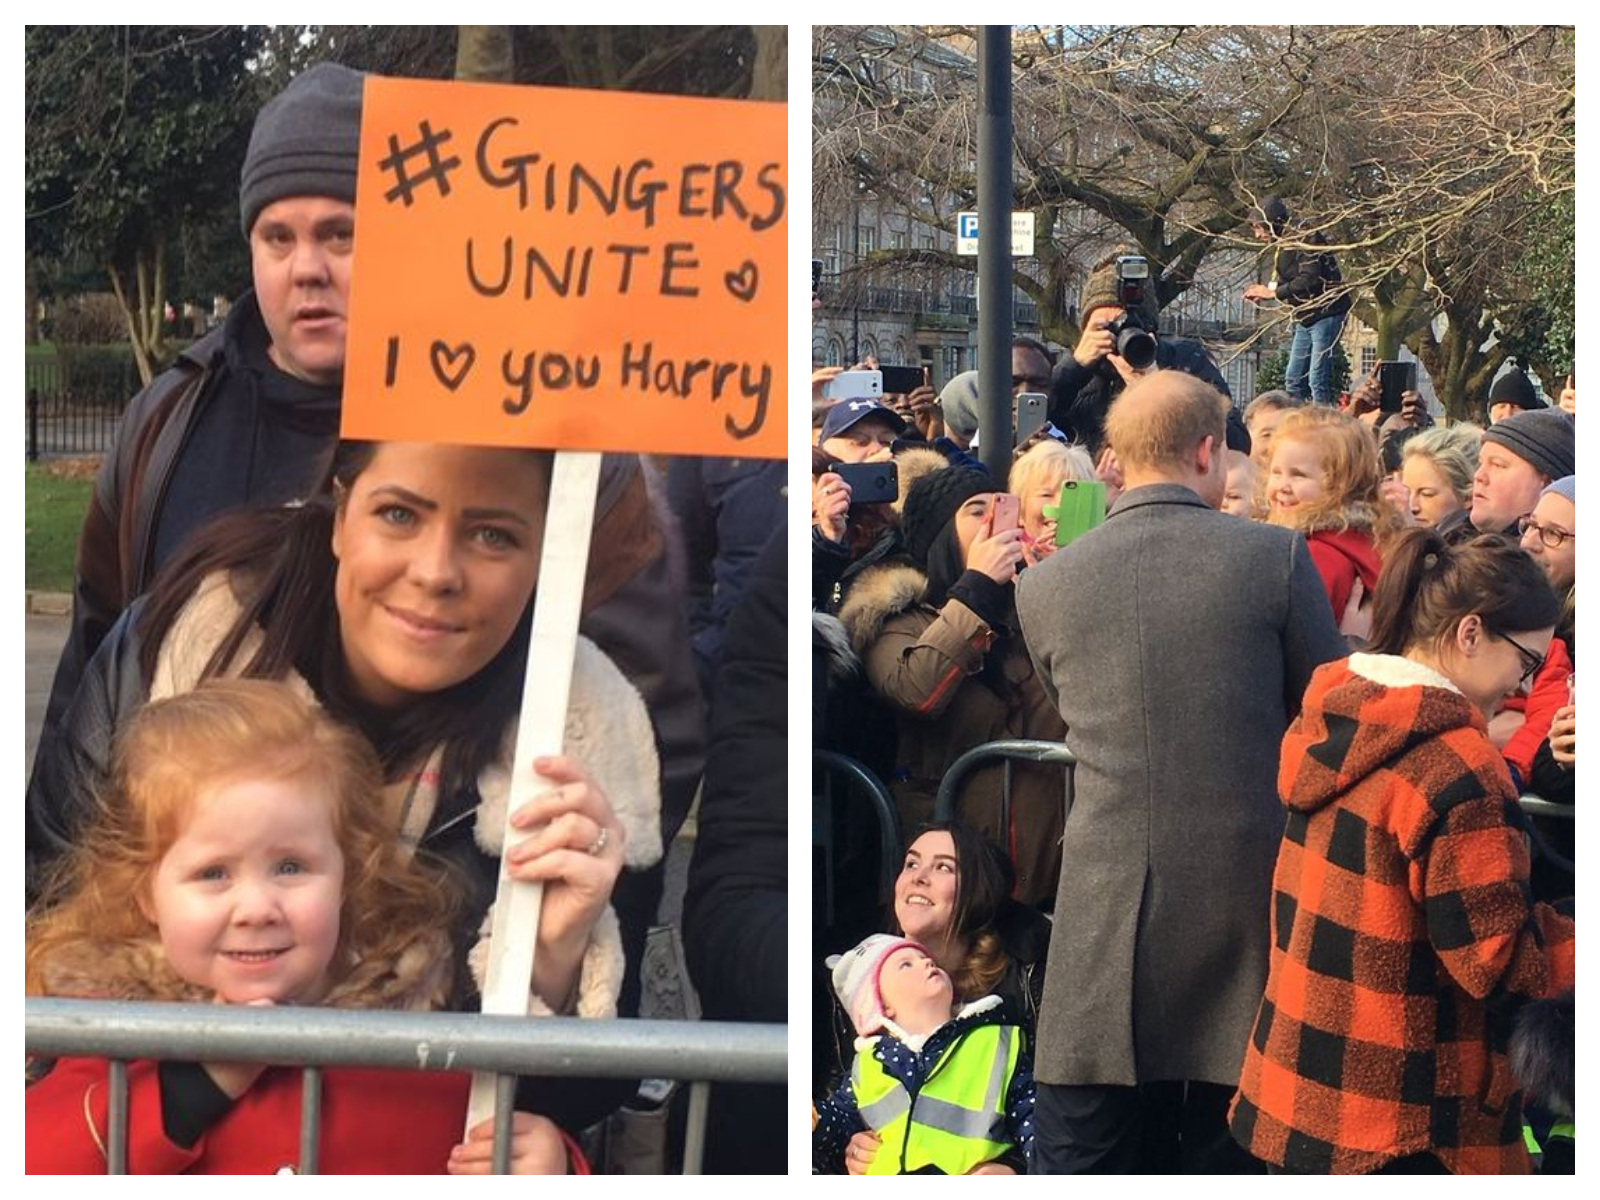 Prince Harry : Une fillette rousse présente dans la foule capte son attention !